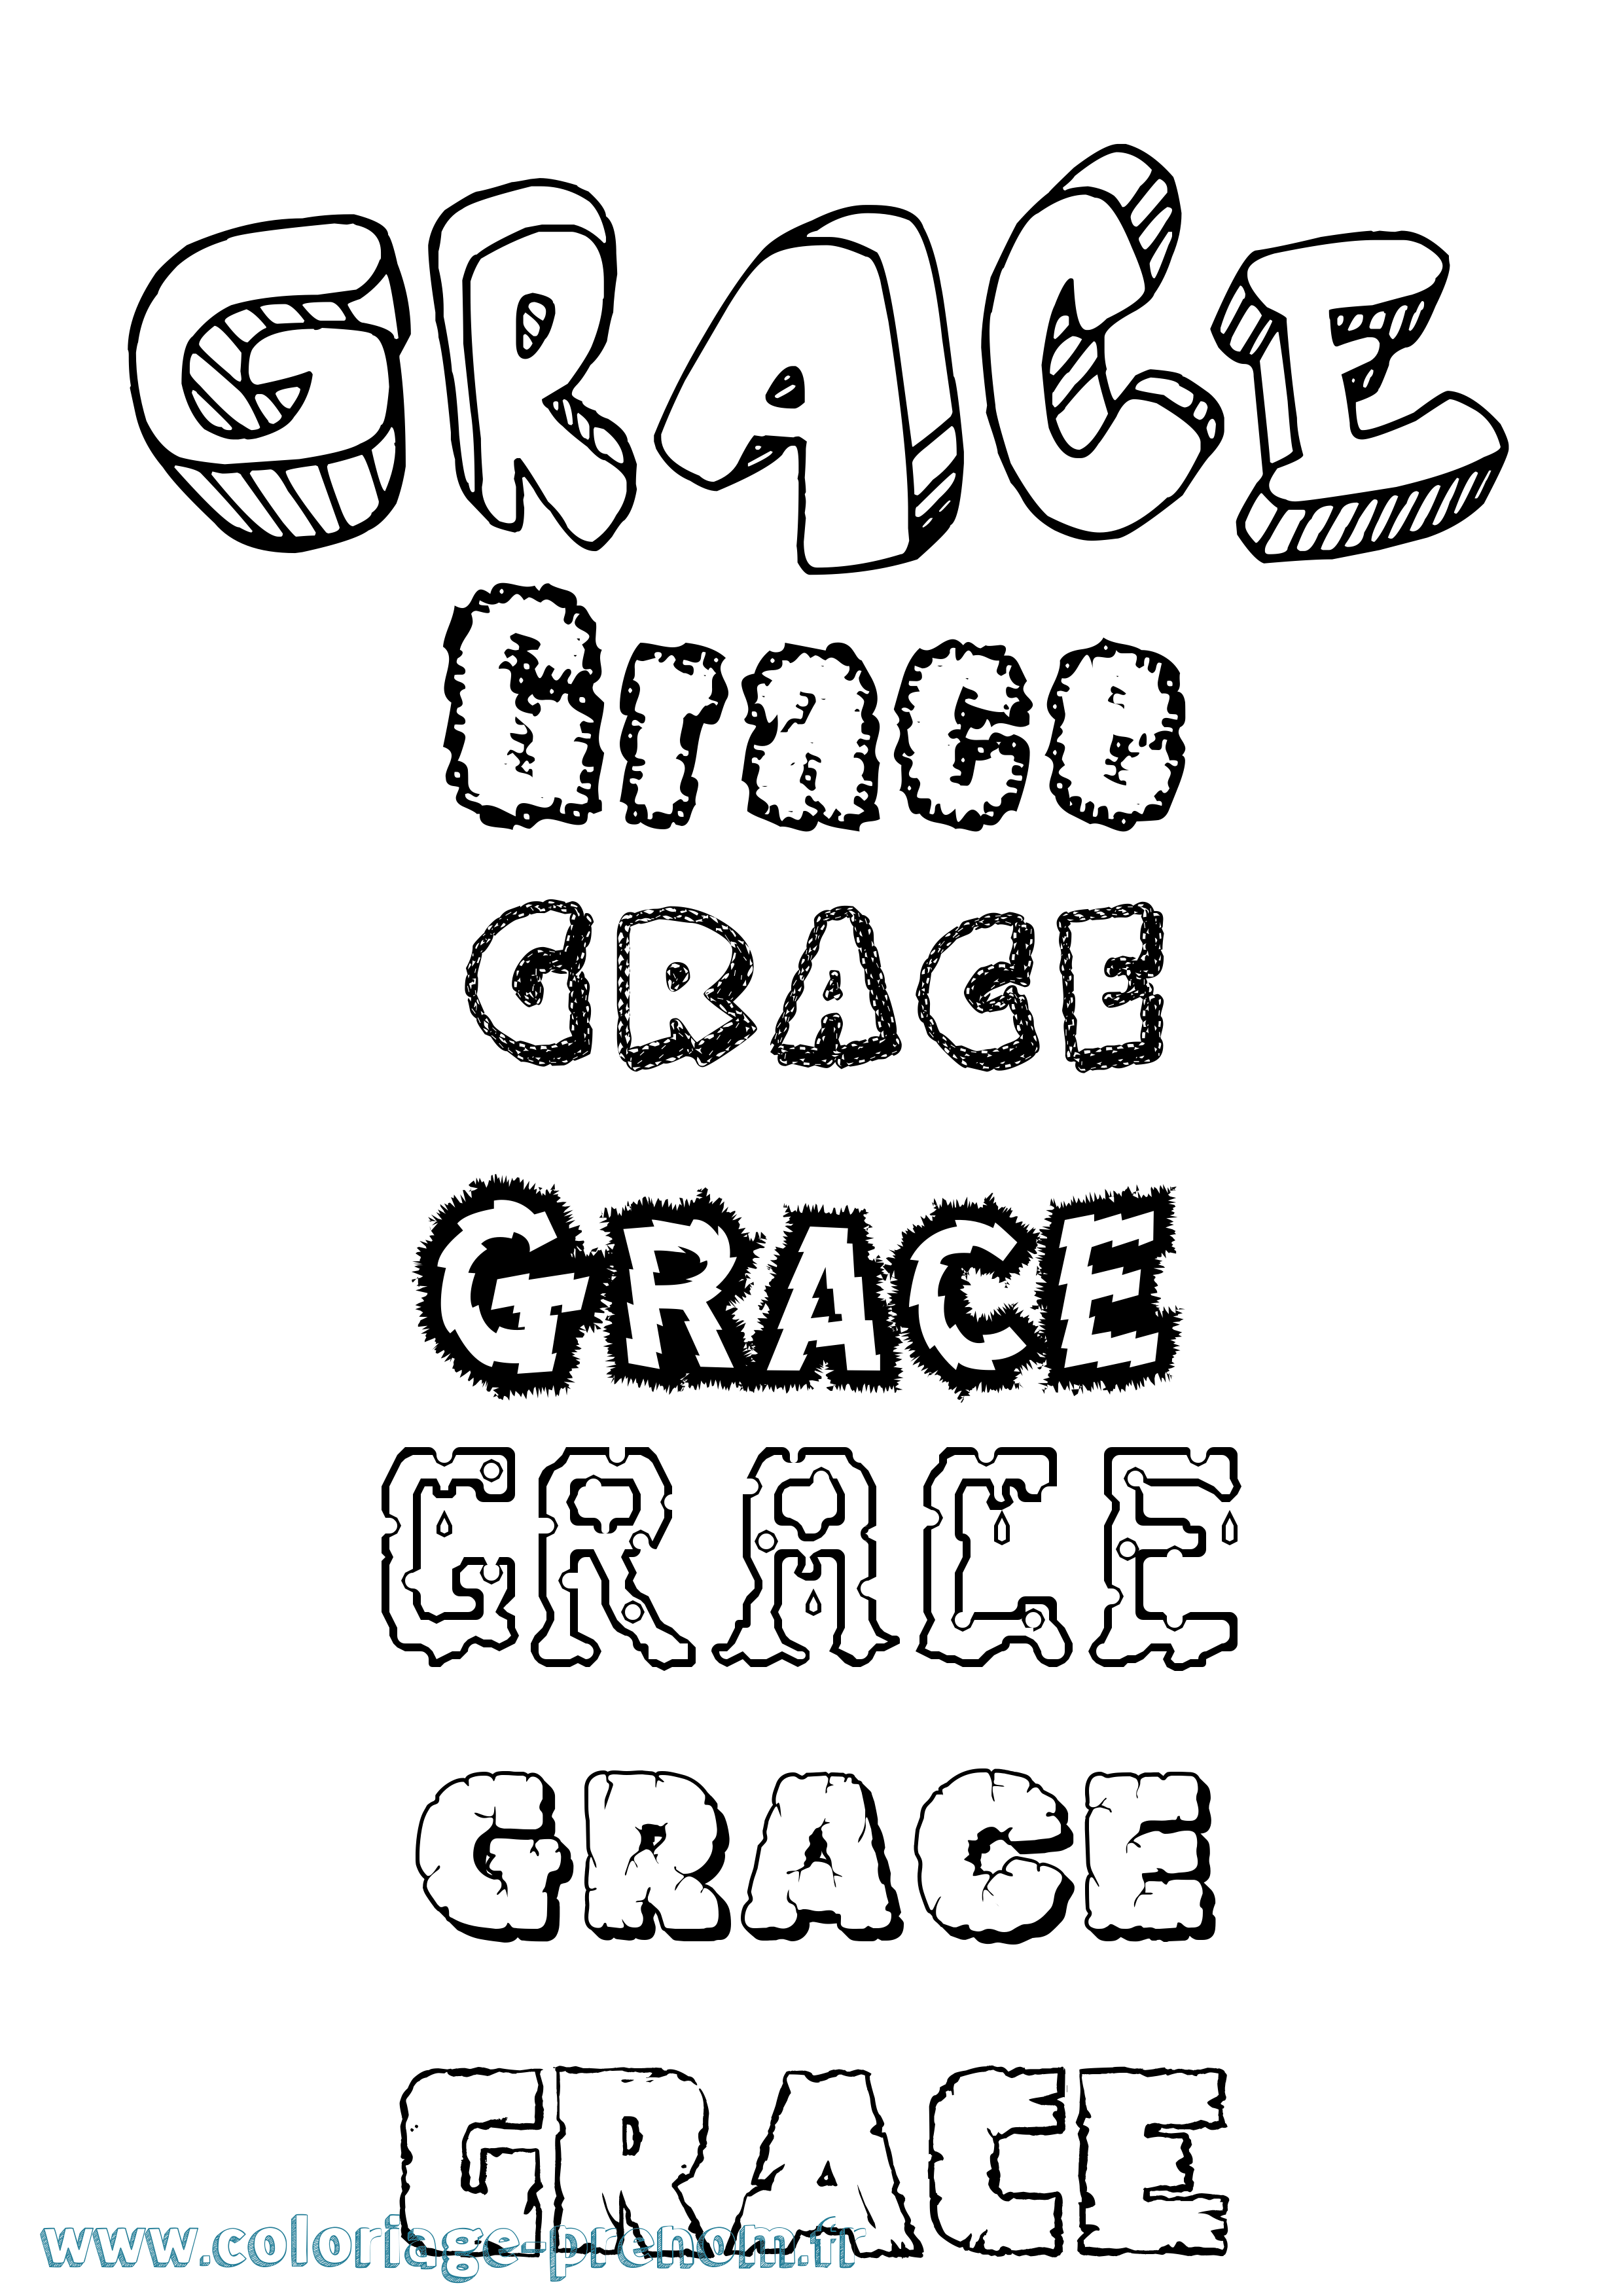 Coloriage prénom Grace